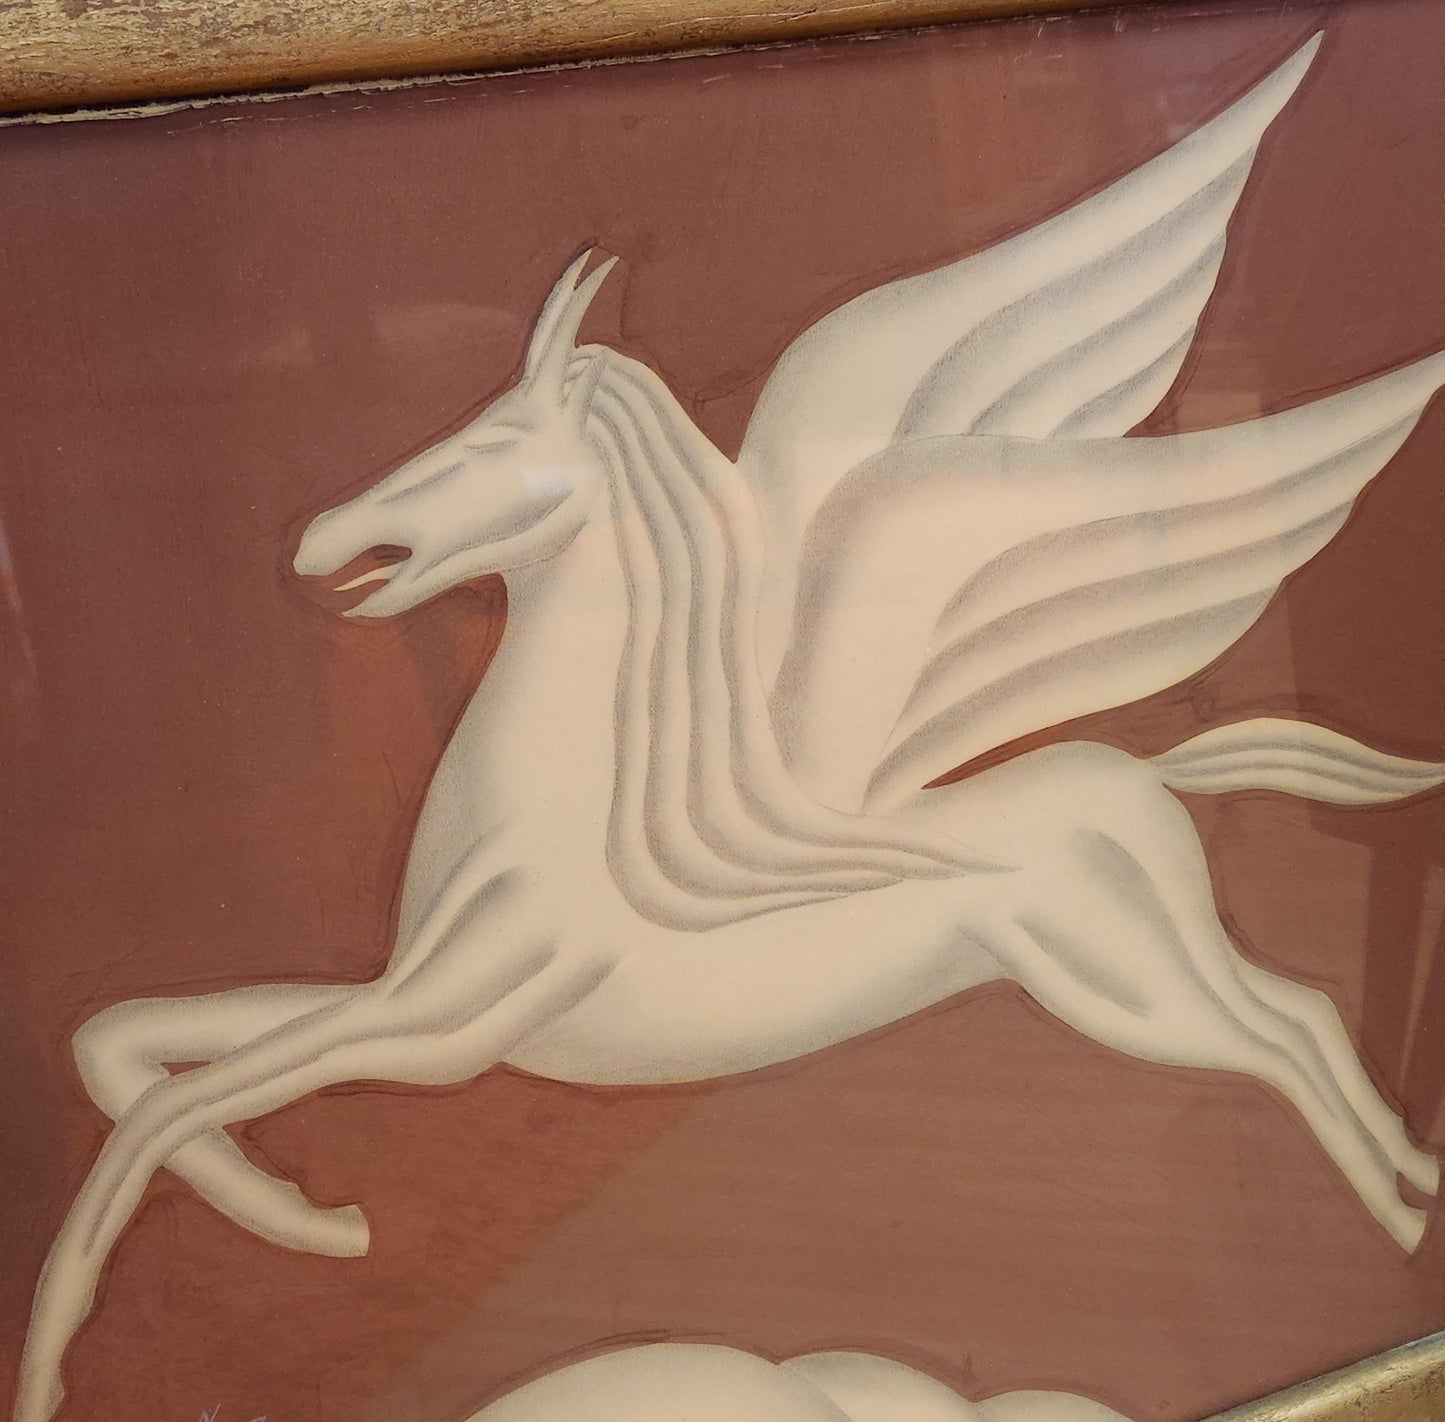 Vintage Signed Pegasus Framed Print